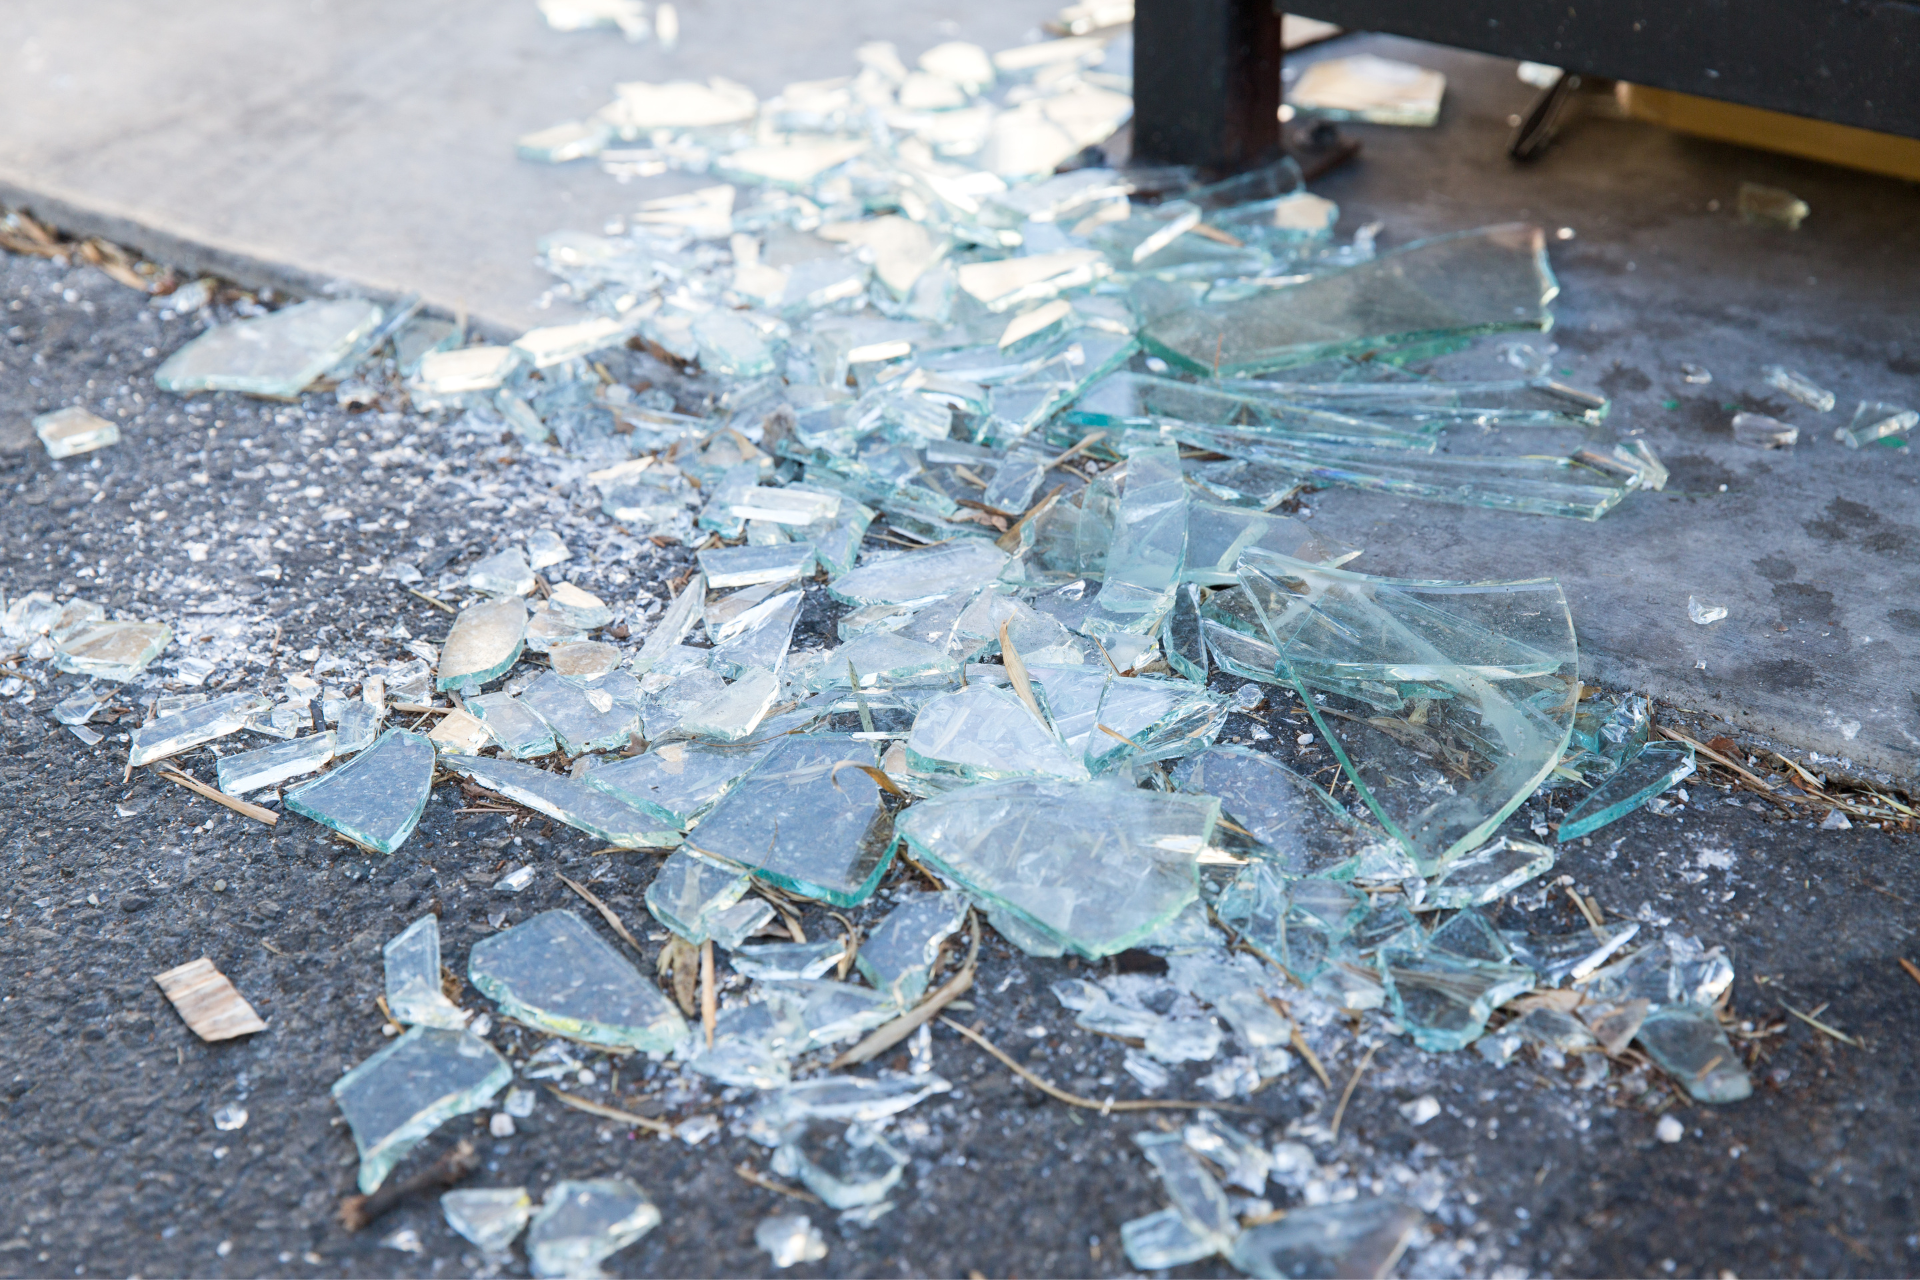 Разбитые полы. Разбитое стекло. Разбитые стекла на полу. Пол с разбитым стеклом. Кусок стекла.